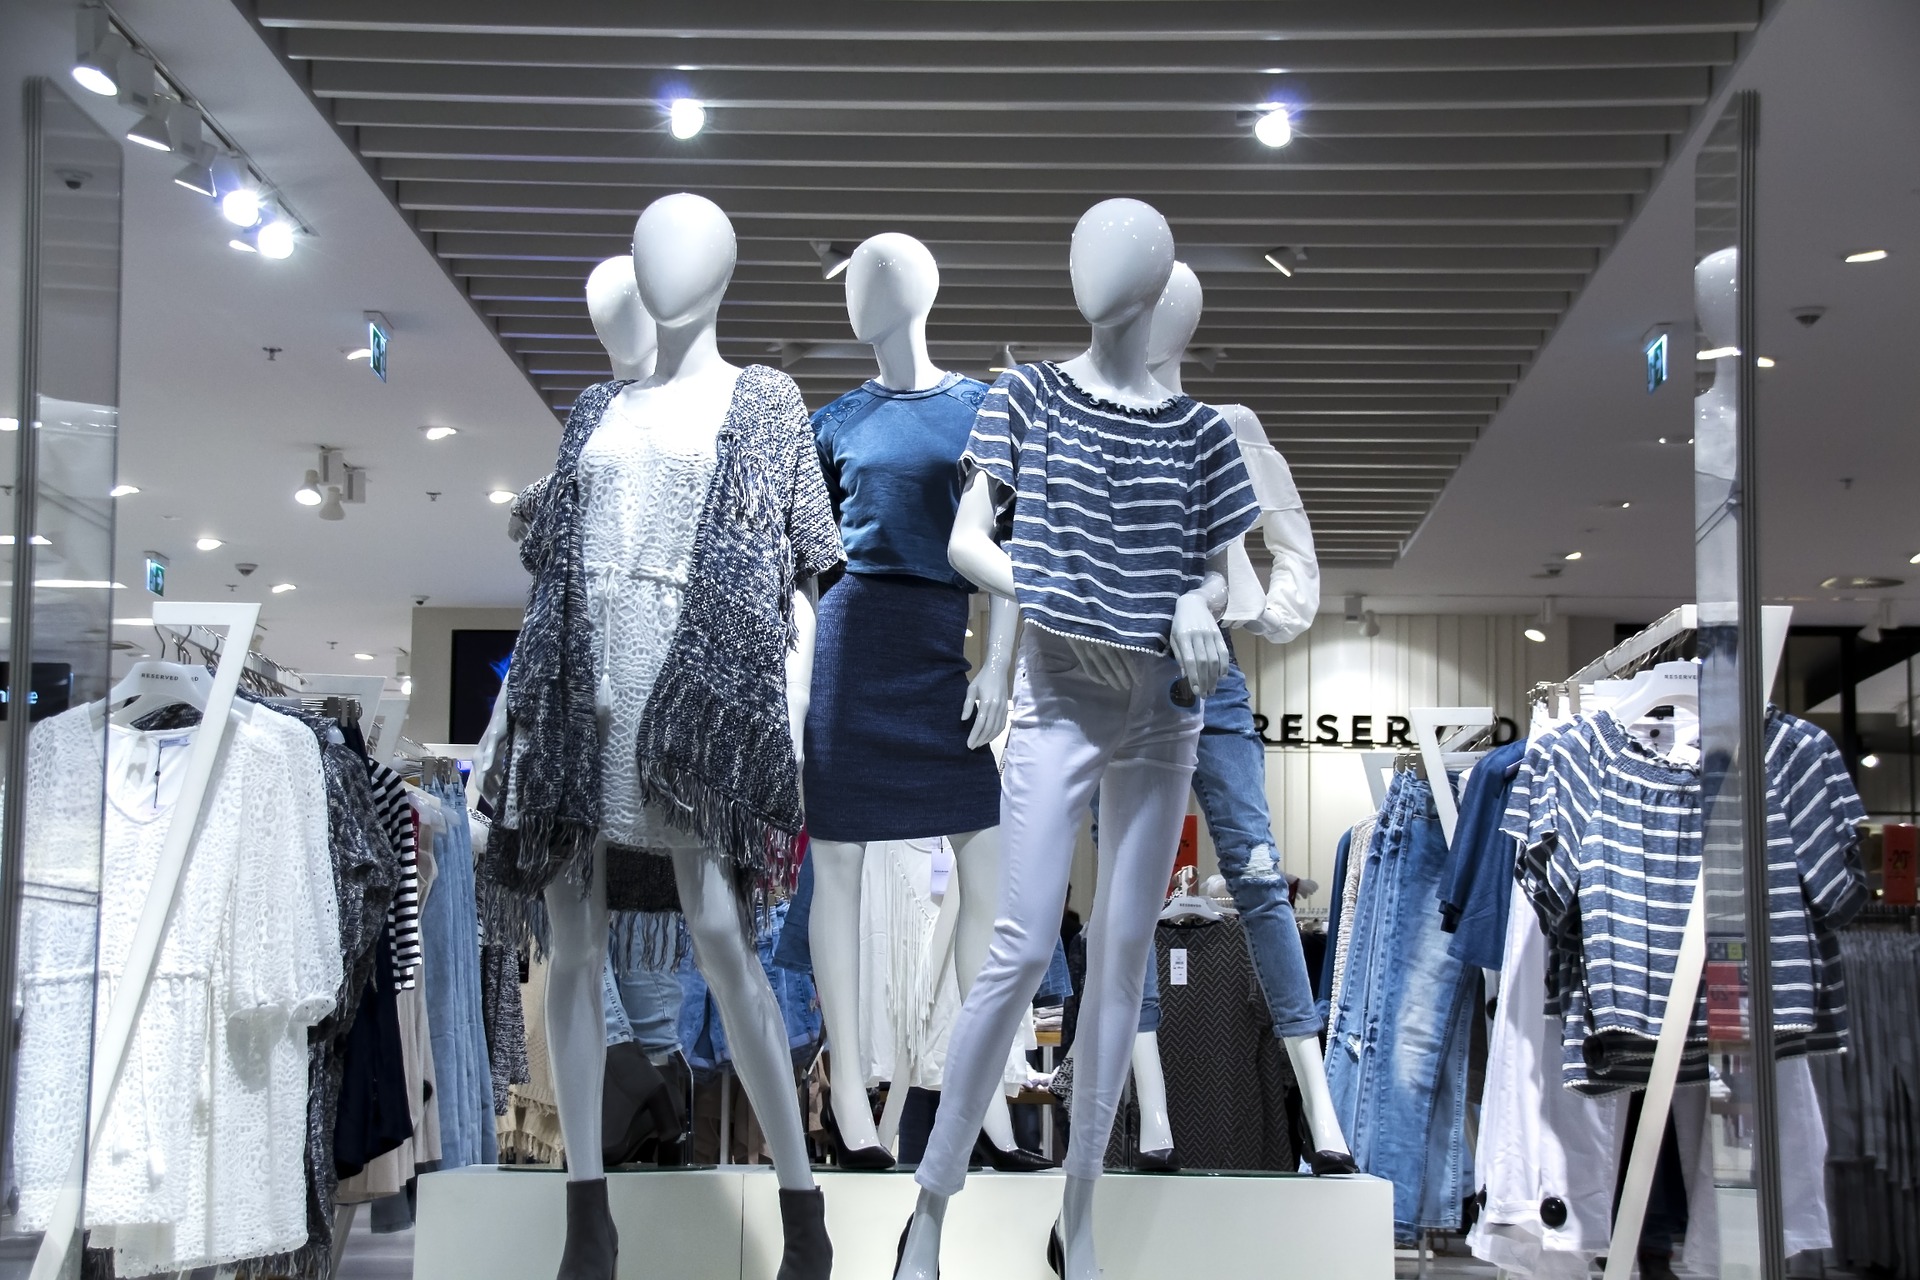 Fluxo de visitantes em shopping centers cresce 2,5% em março, diz Abrasce